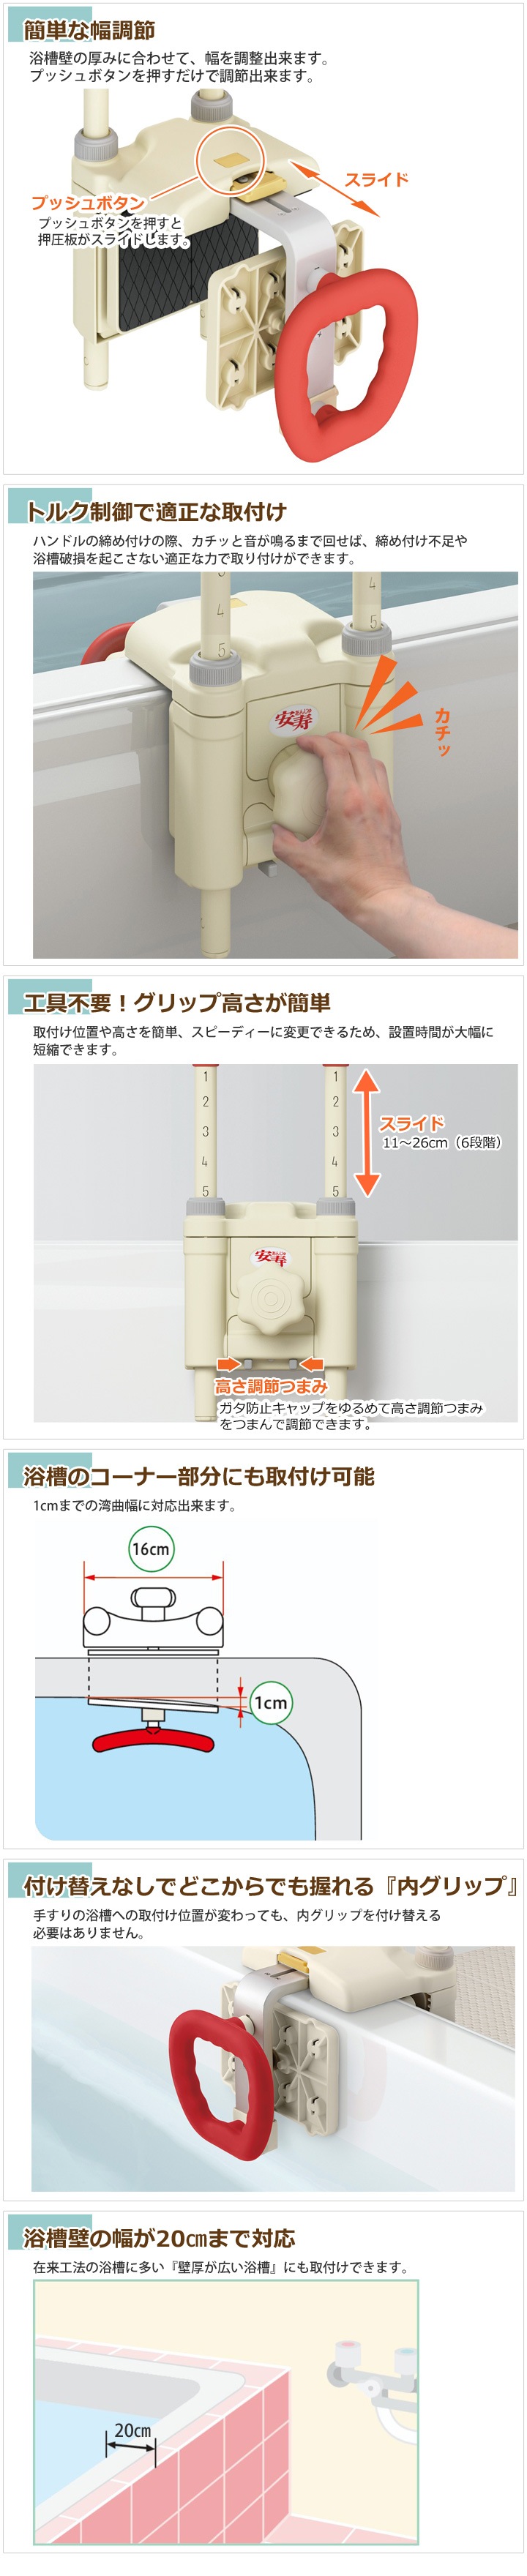 高さ調節付浴槽手すり UST-200N[アロン化成] | 介護用品通販のロッキー